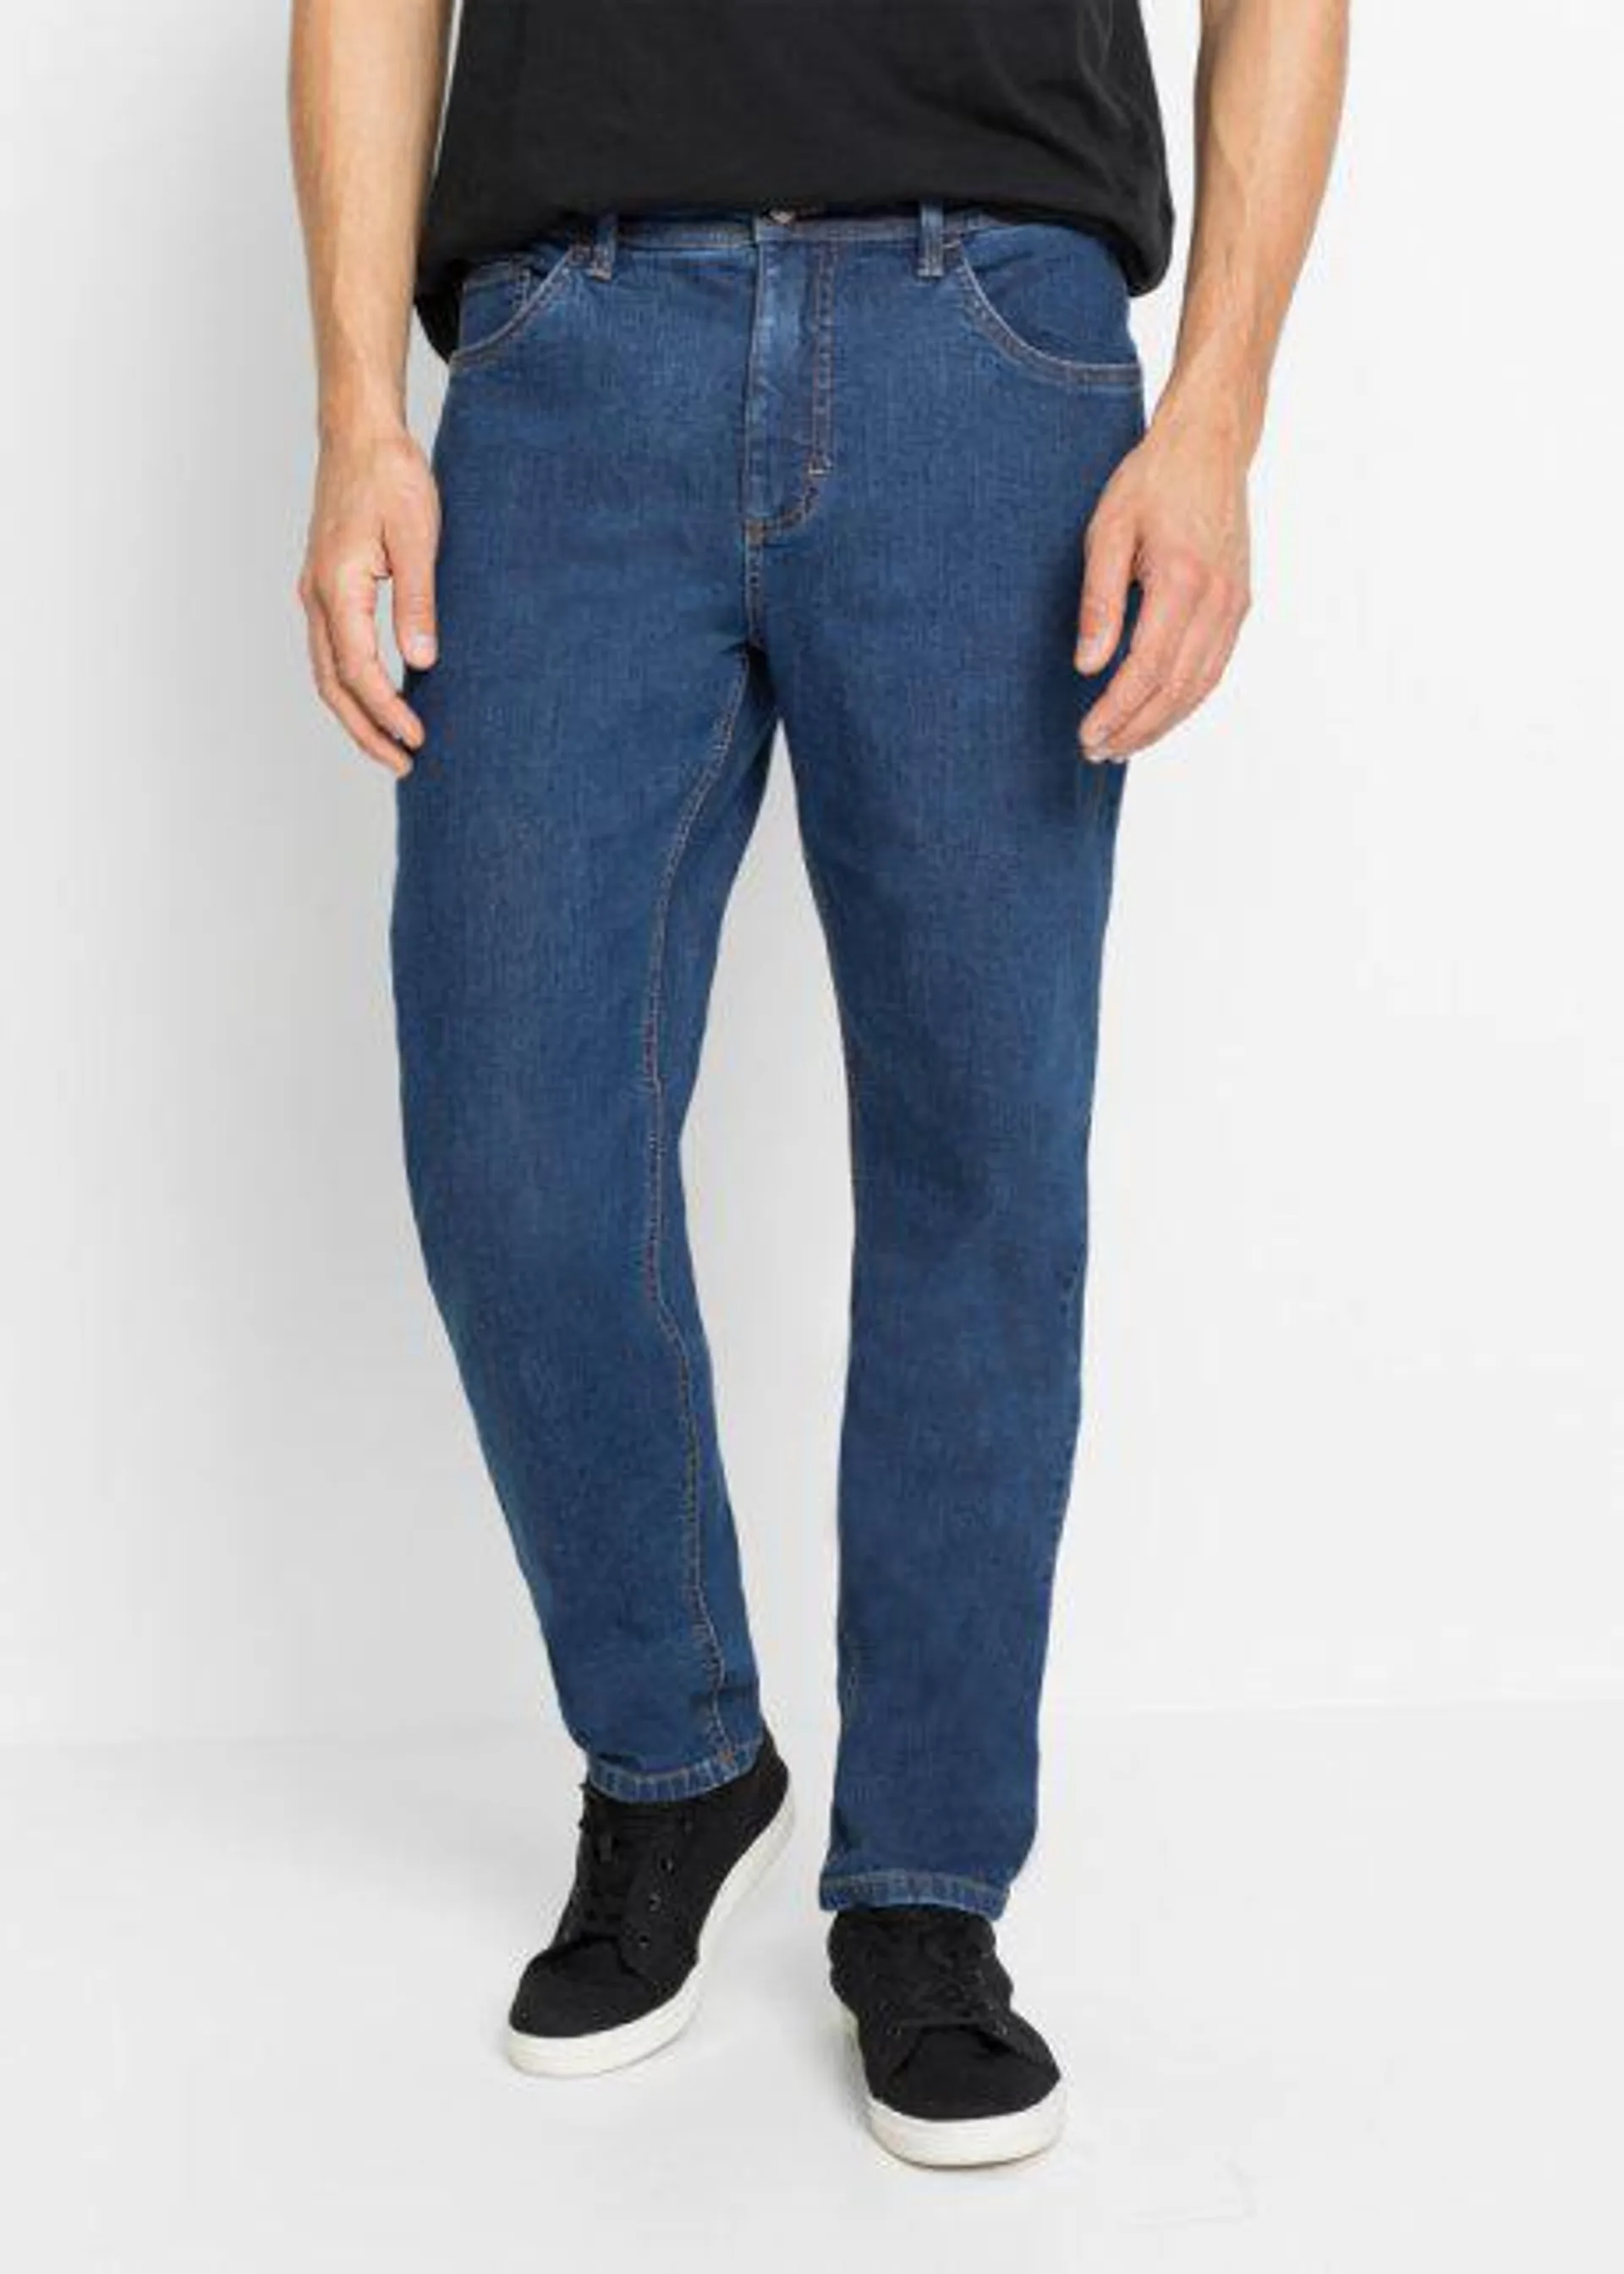 Jeans elasticizzati cropped con Positive Denim #1 Fabric